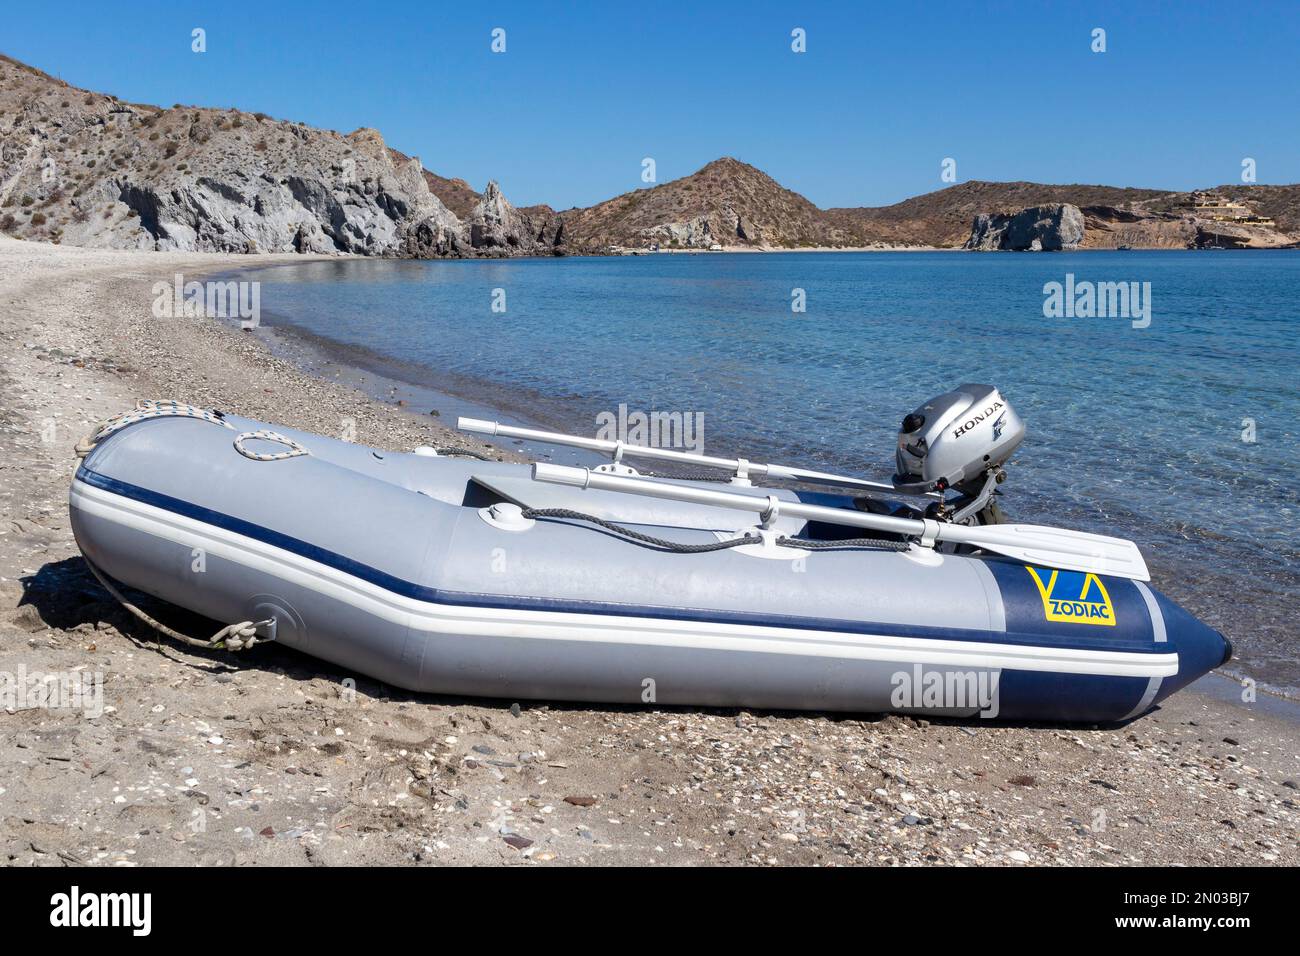 Ruina El principio Innecesario Zodiac dinghy inflable (un barco tender) con motor fuera de borda Honda en  la playa en el Mar de Cortés, Baja California, México Fotografía de stock -  Alamy